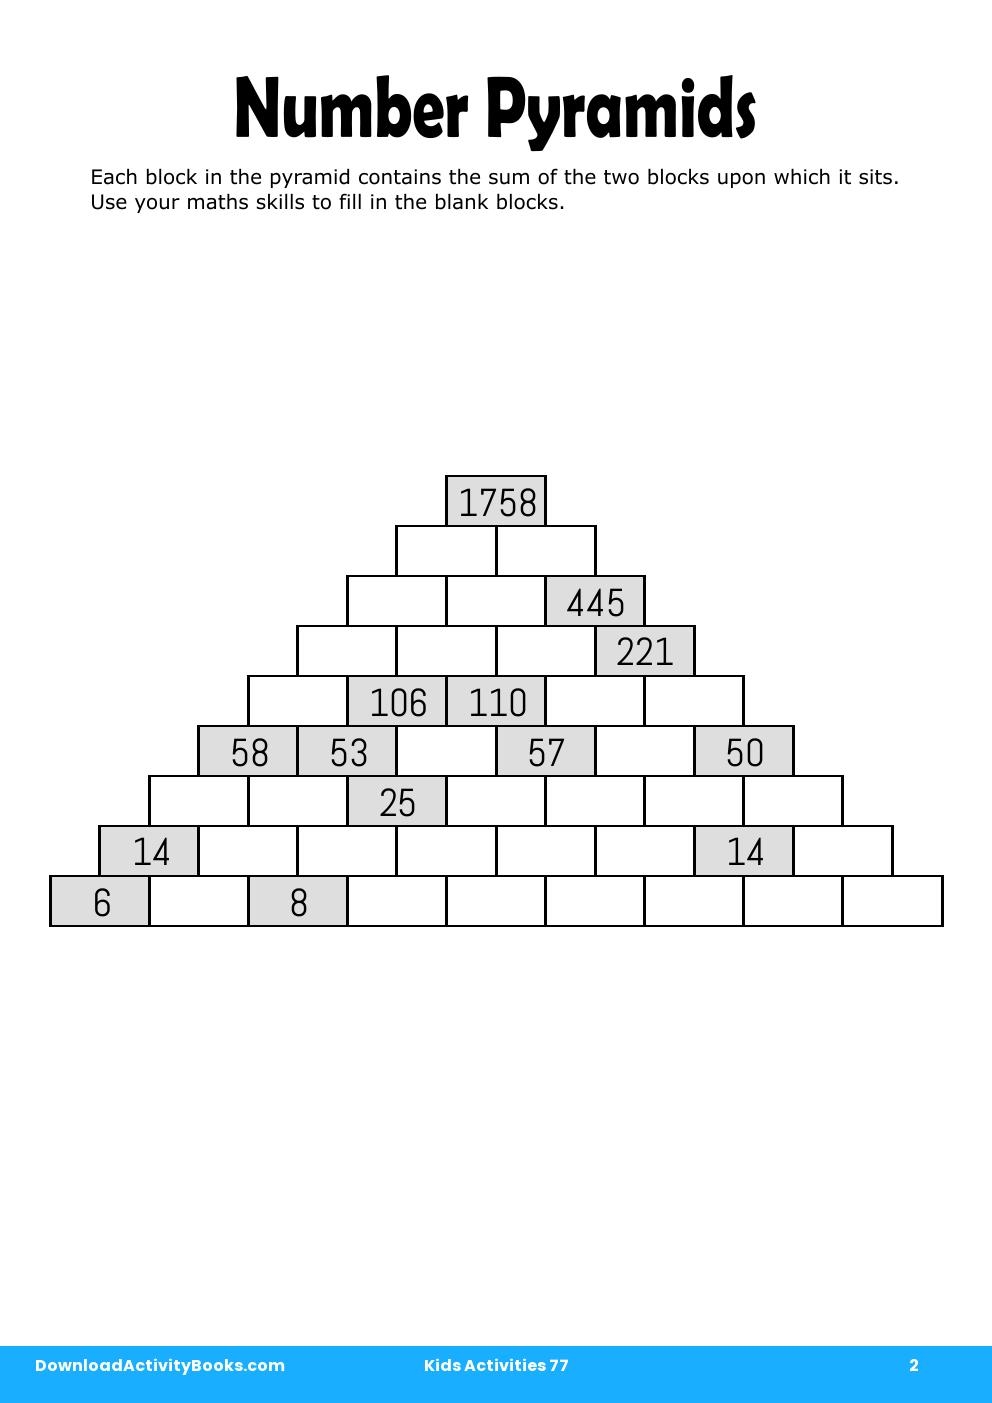 Number Pyramids in Kids Activities 77